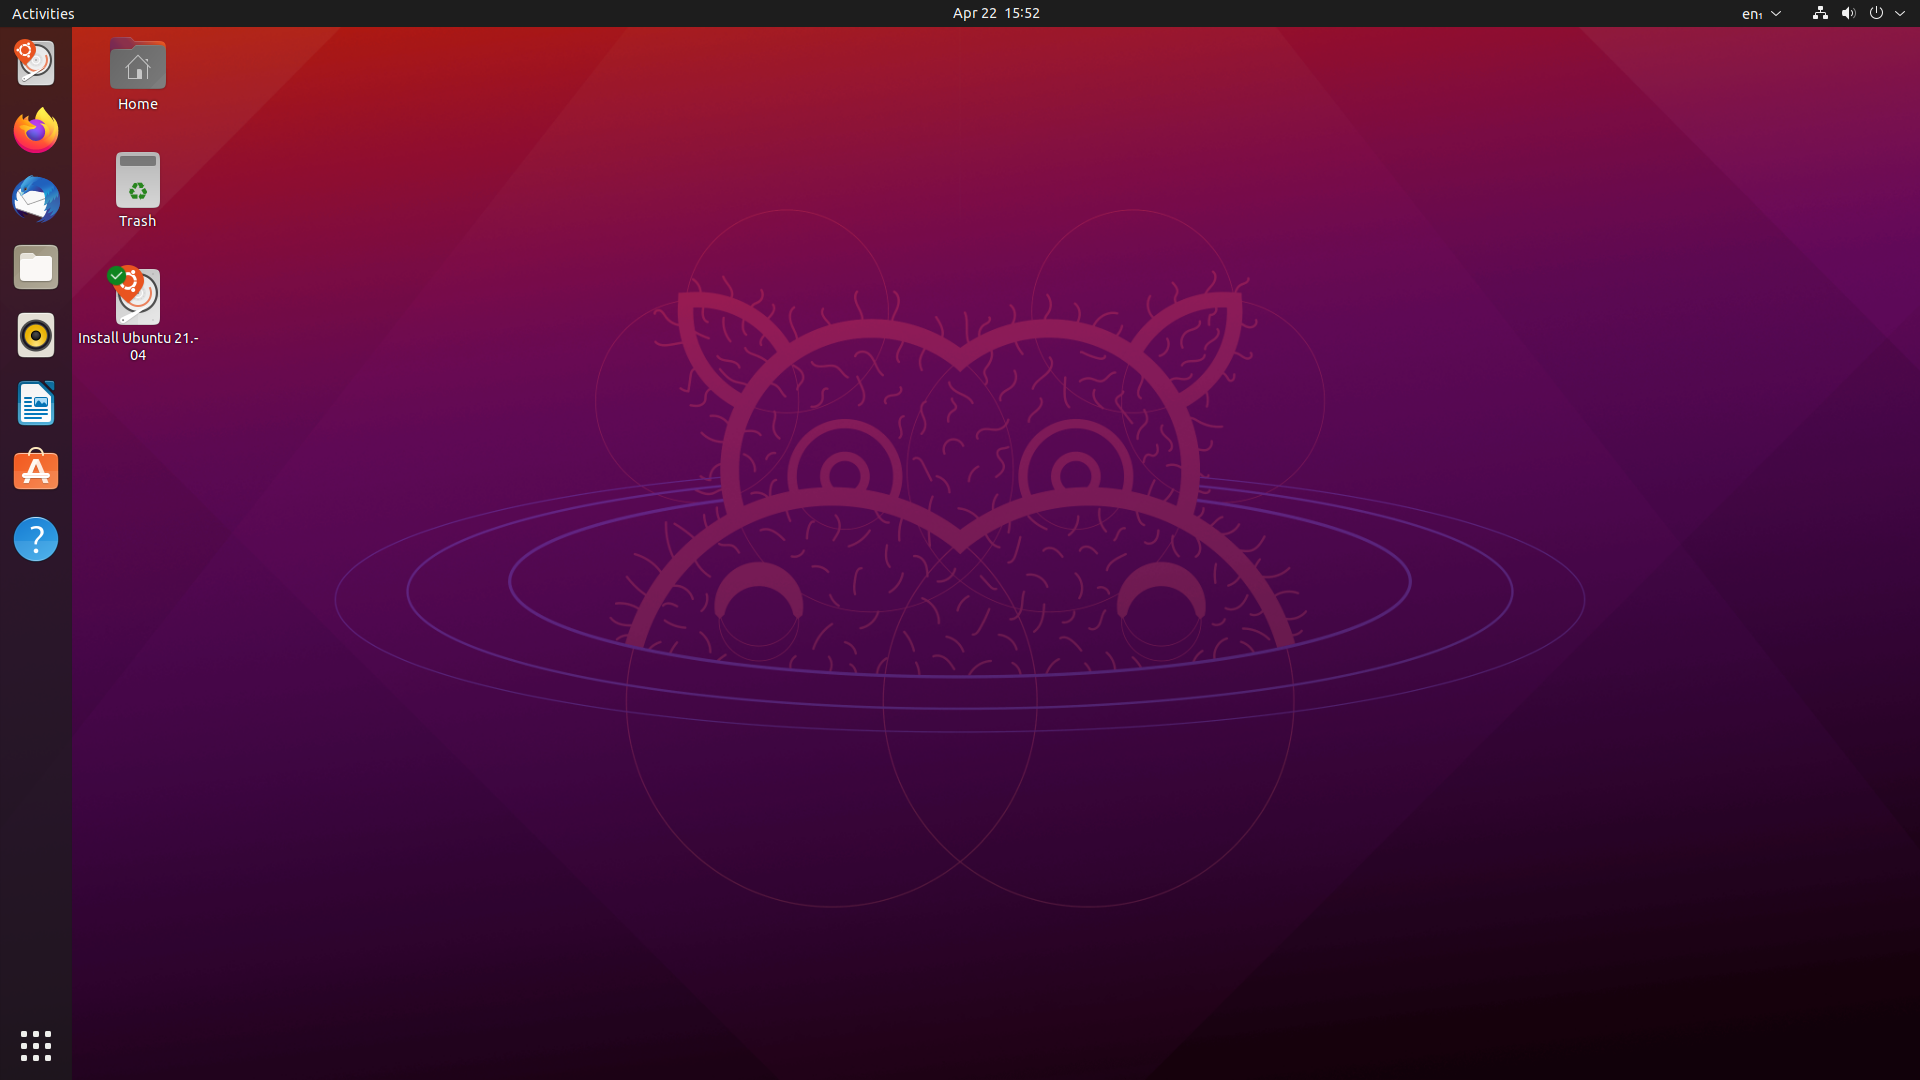 Rilasciata Ubuntu 21.04 Hirsute Hippo assieme alle sue derivate ufficiali.